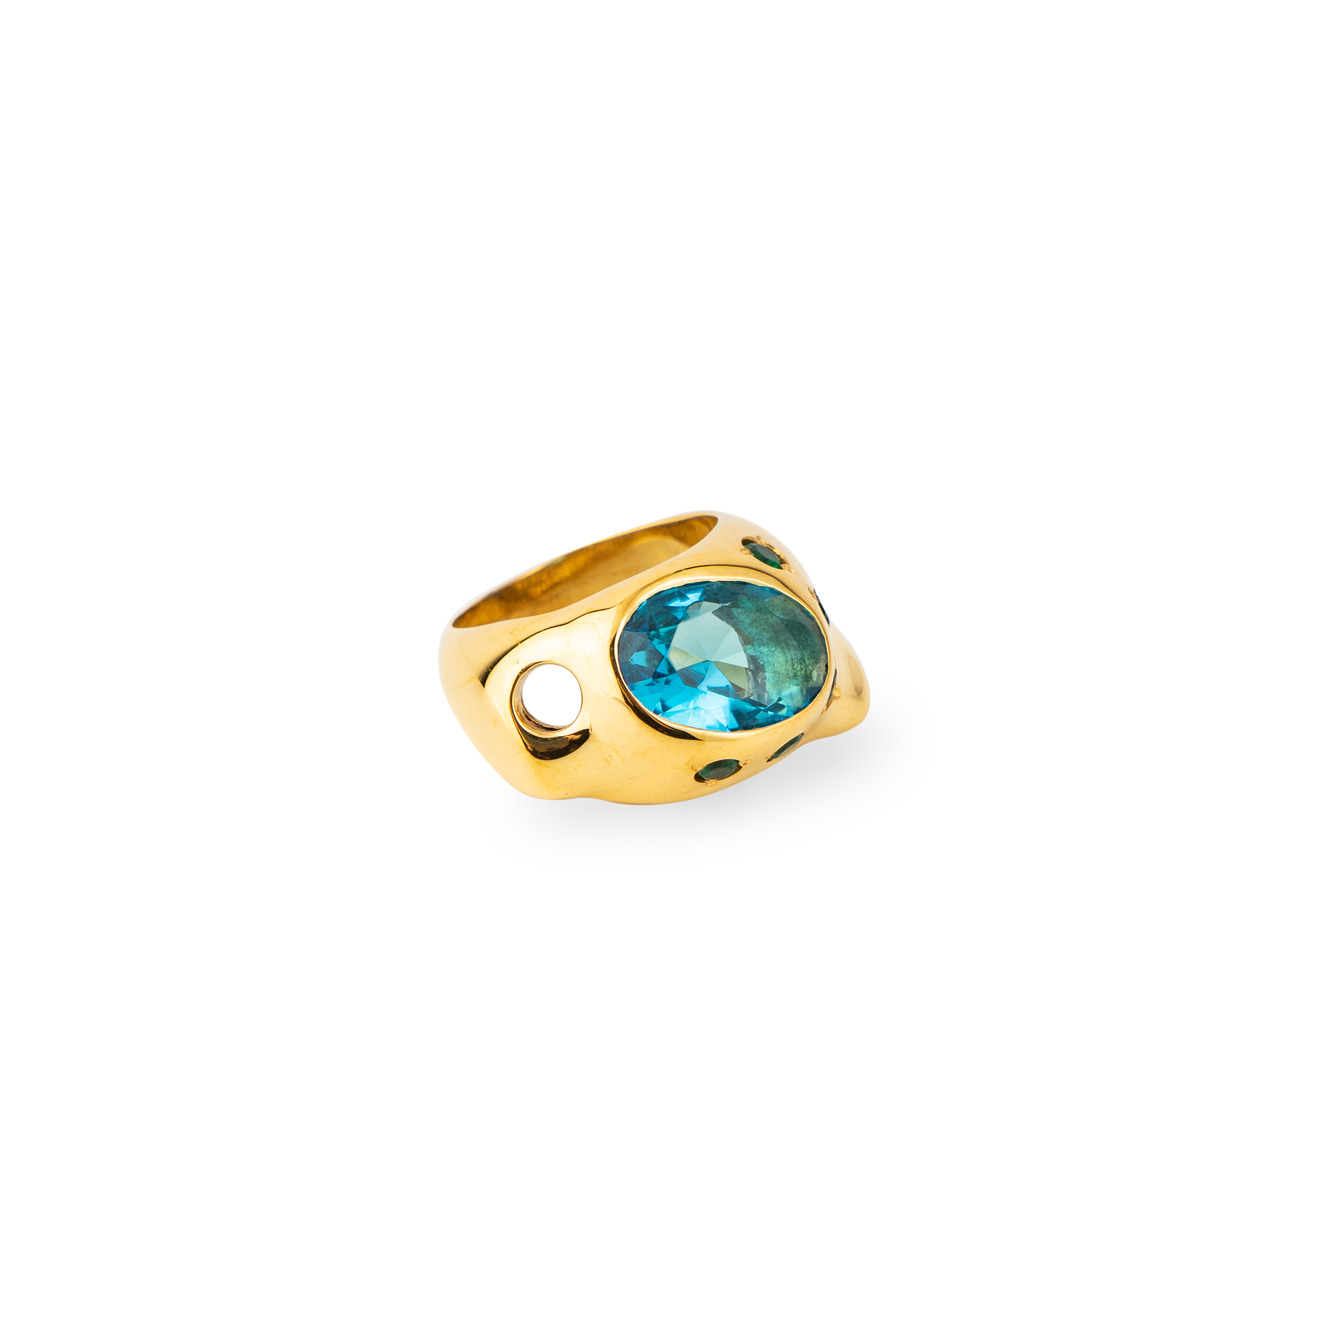 Janashia Золотистое кольцо Ava волнообразной формы со вставками из зеленых и голубого кристалла janashia серебристые серьги bella изогнутой офрмы со вставками из цветных фианитав